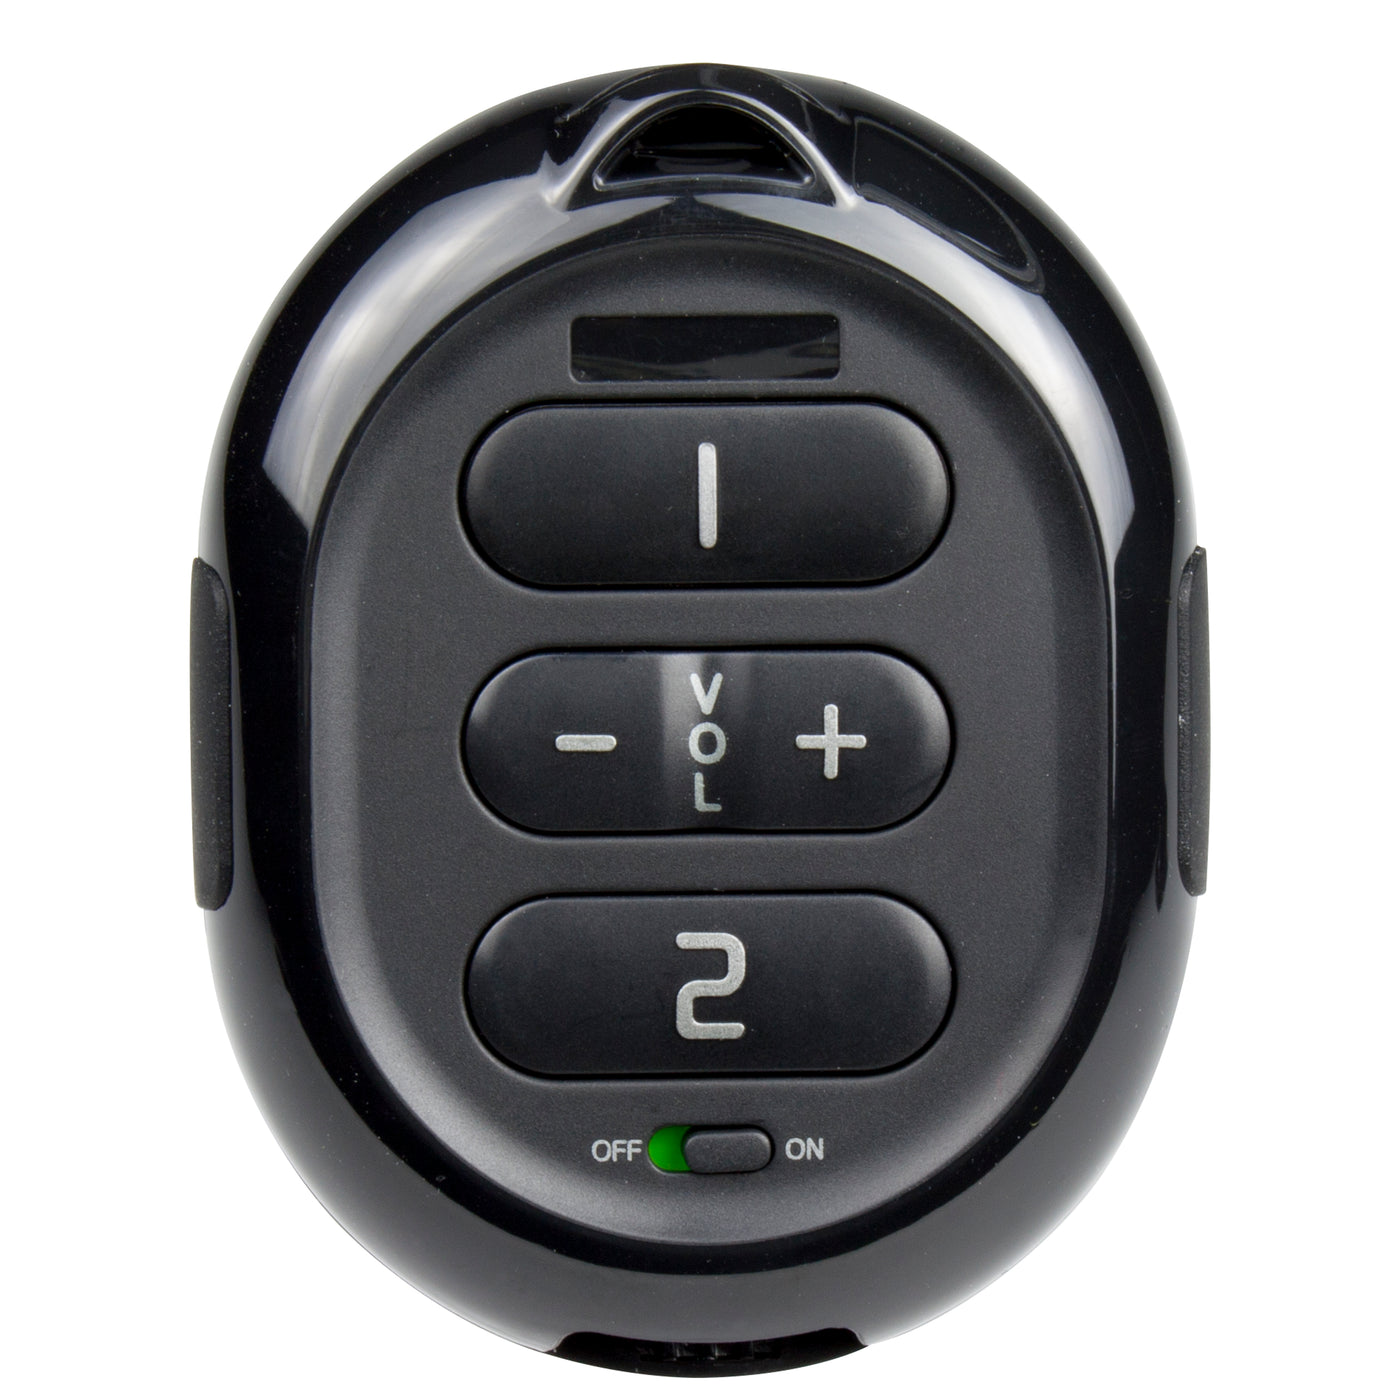 Fysic FX-7010 - Drahtloser Alarmknopf für die Fysic FX-7000 Serie, schwarz/silber